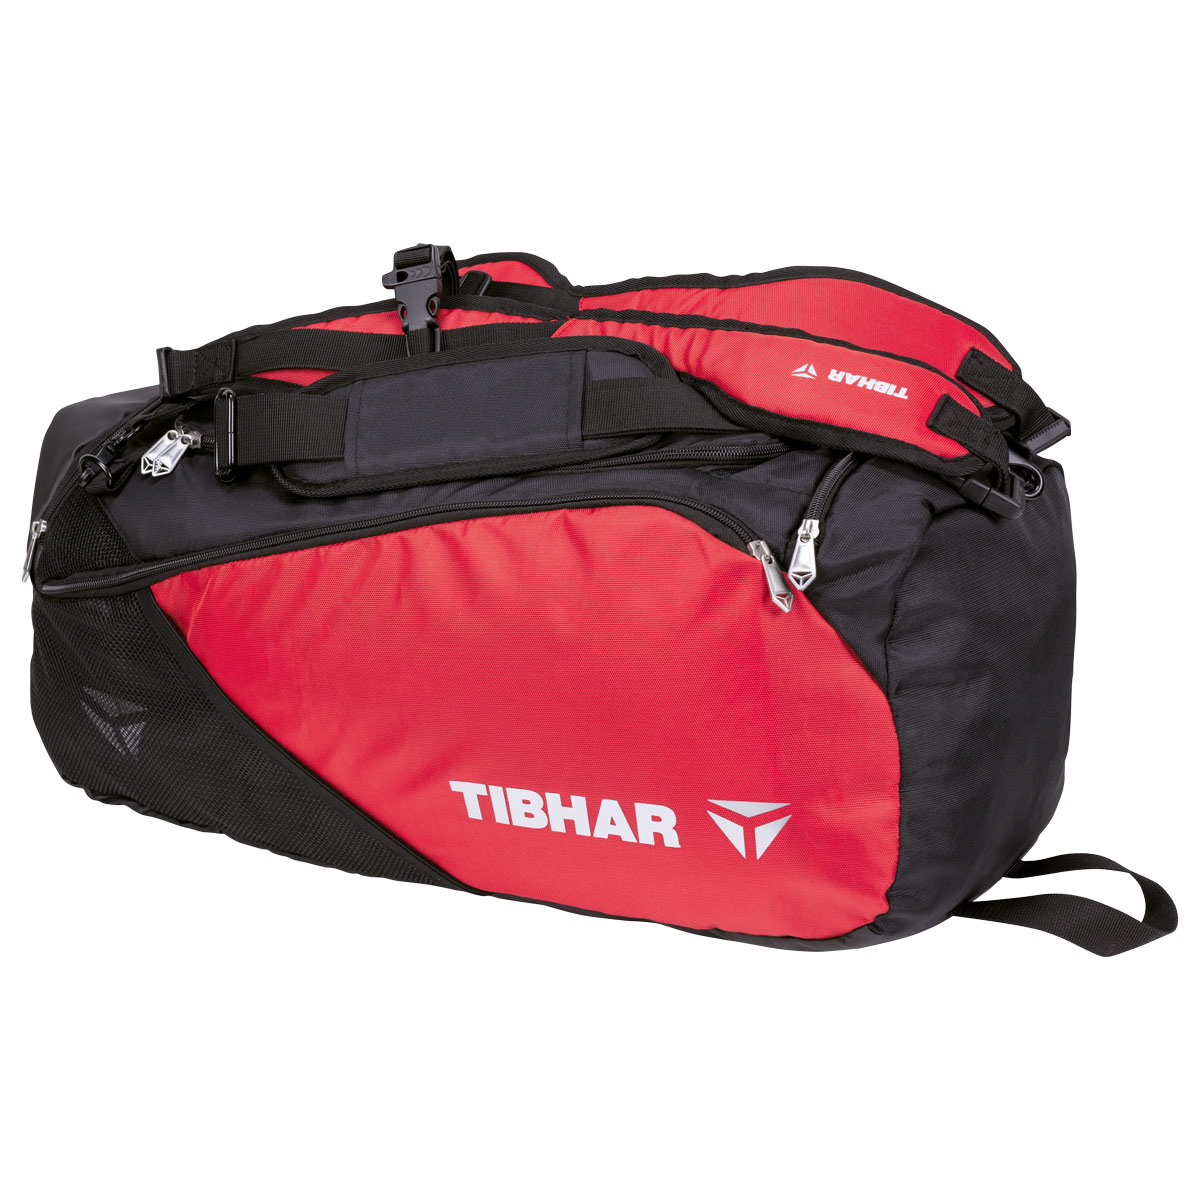 TIBHAR Sportsbag Mesh red/black